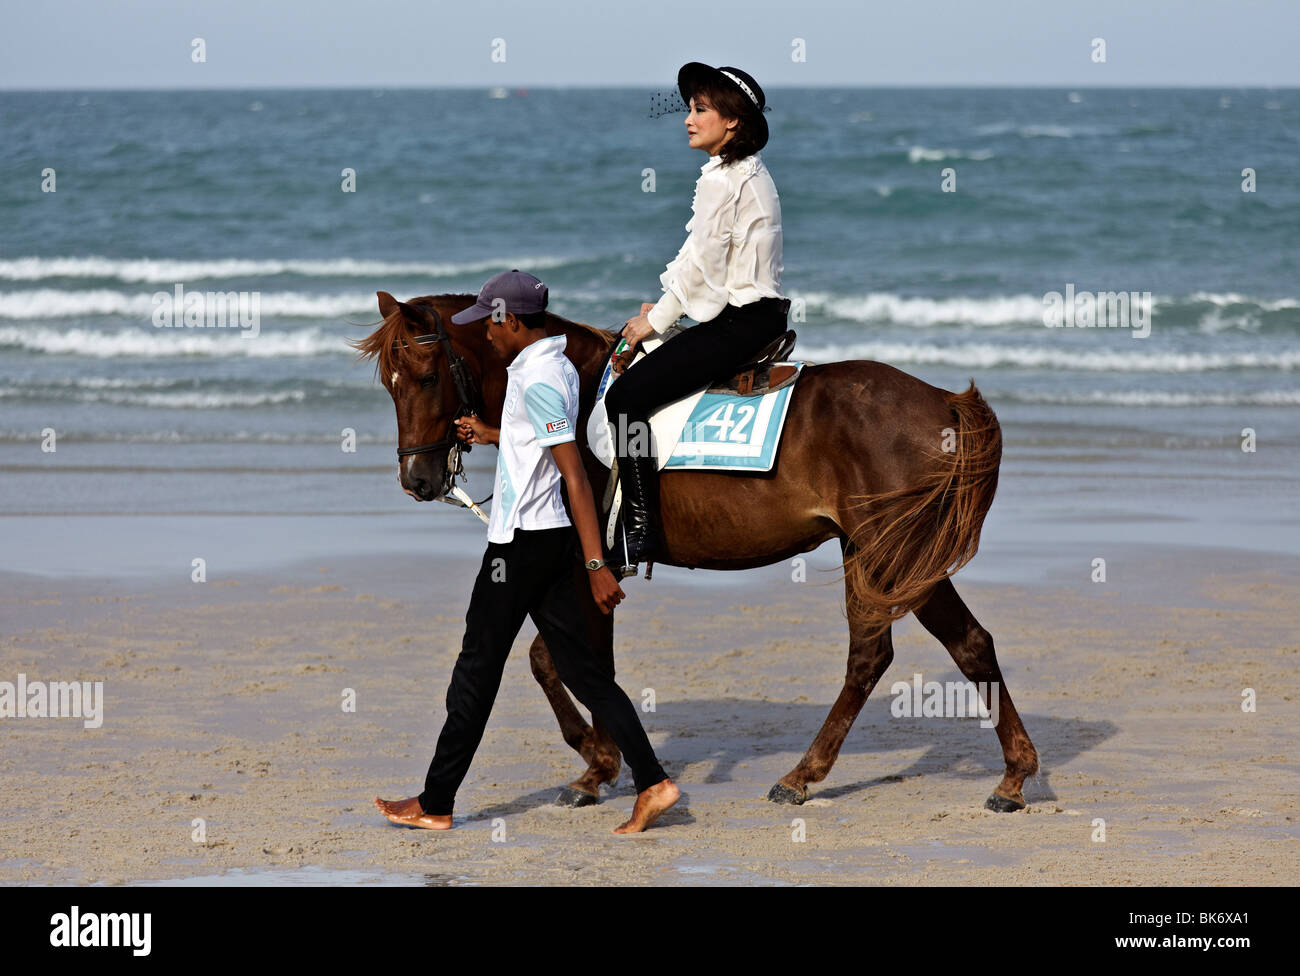 Frau ein Pferd reiten auf einem Thailand Strand Stockfoto